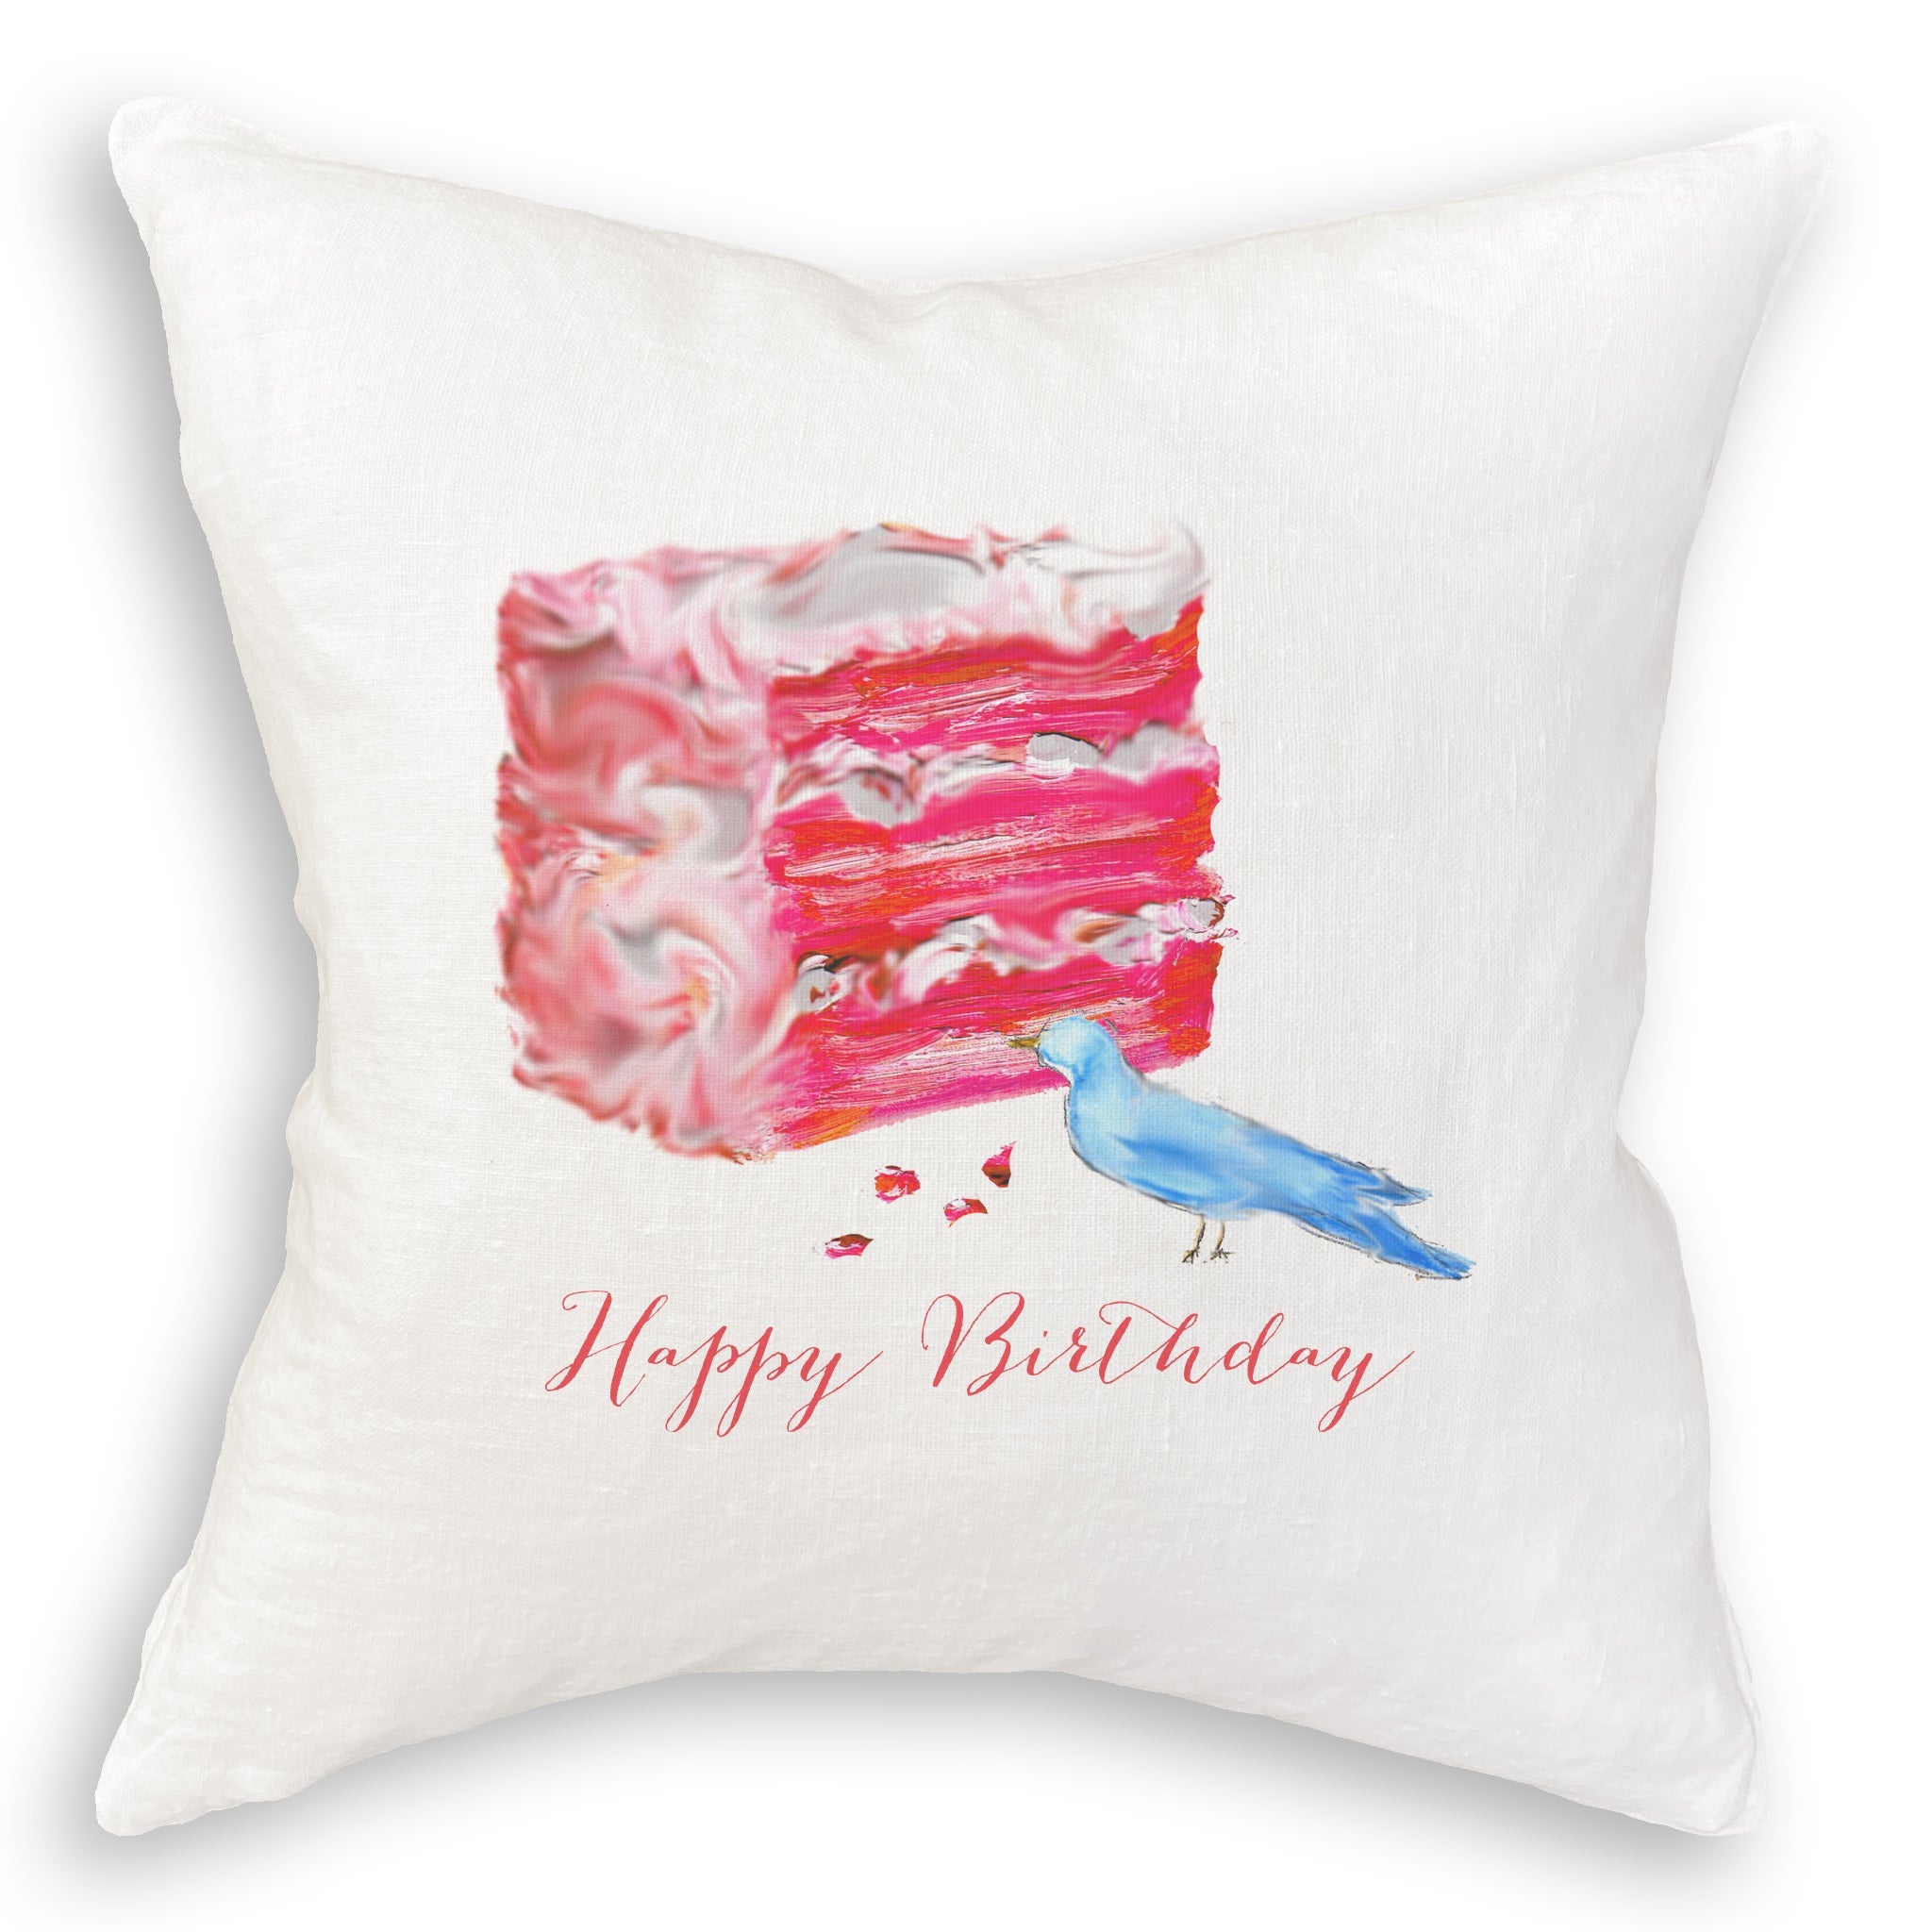 Amazon.com: Sweet birthday cake, happy birthday to me Throw Pillow : Home &  Kitchen